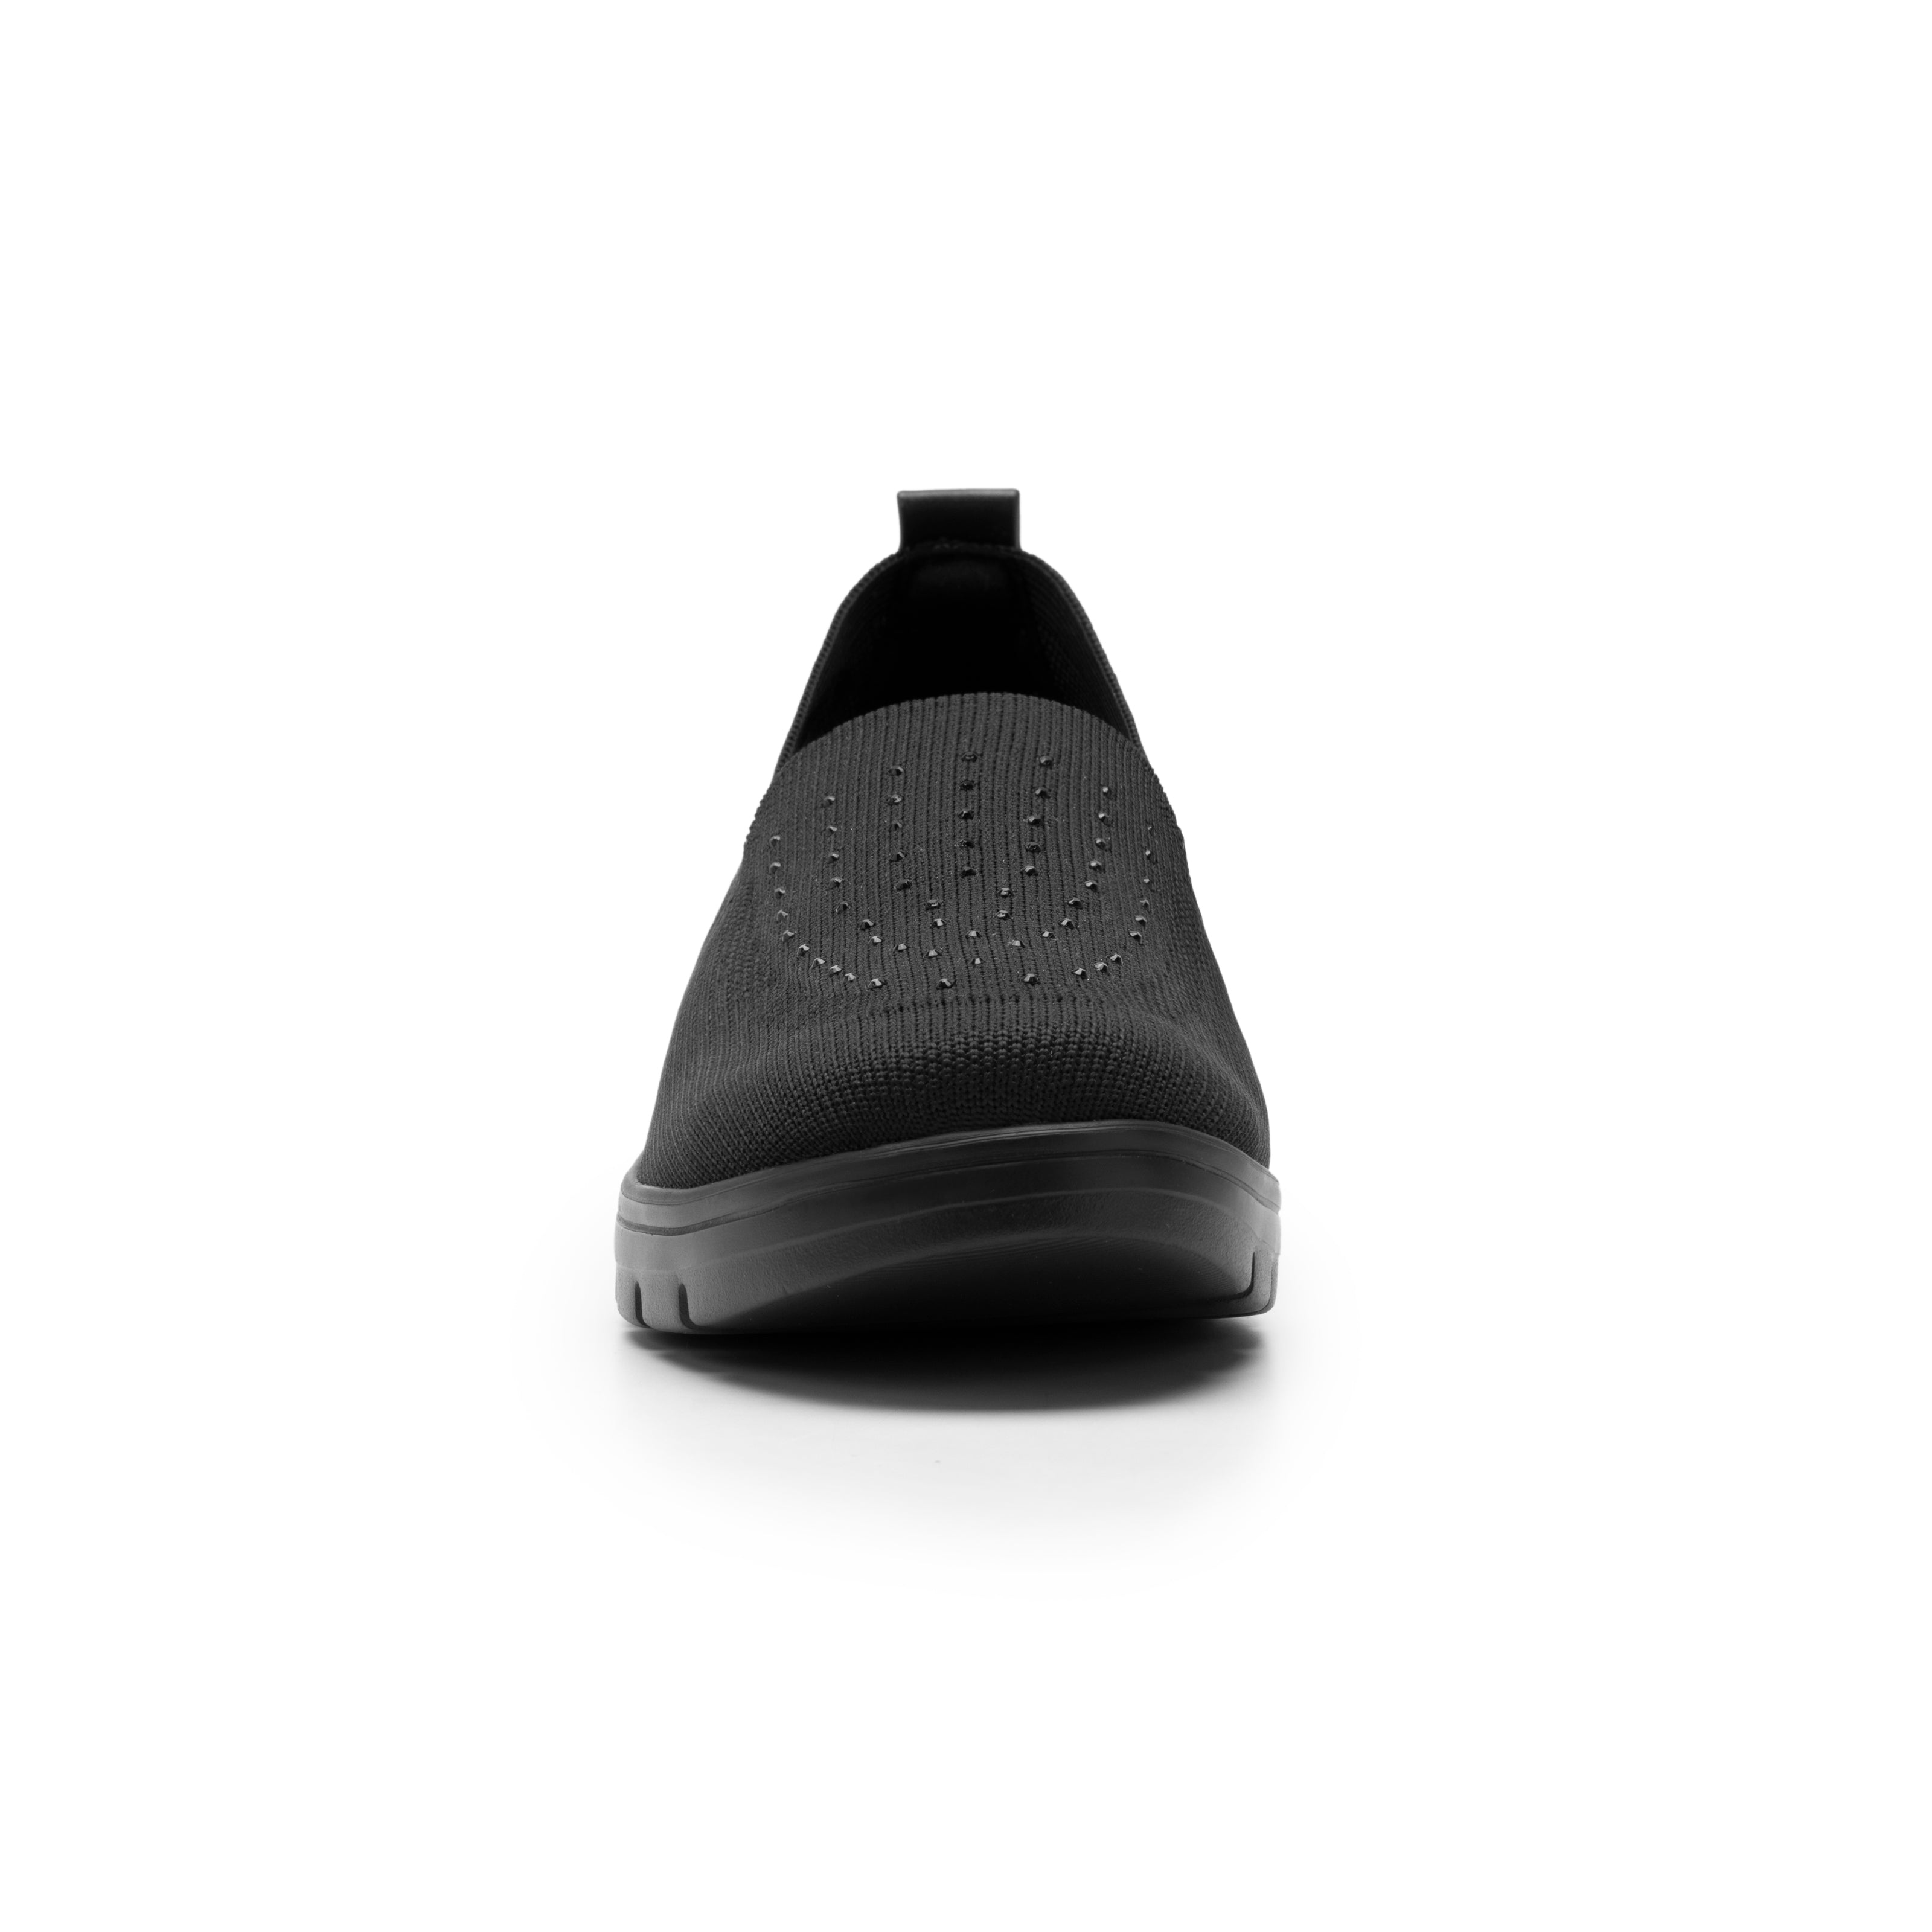 Zapato Confort Flexi Negro para Mujer [FFF3606] - Zapaterias Torreon